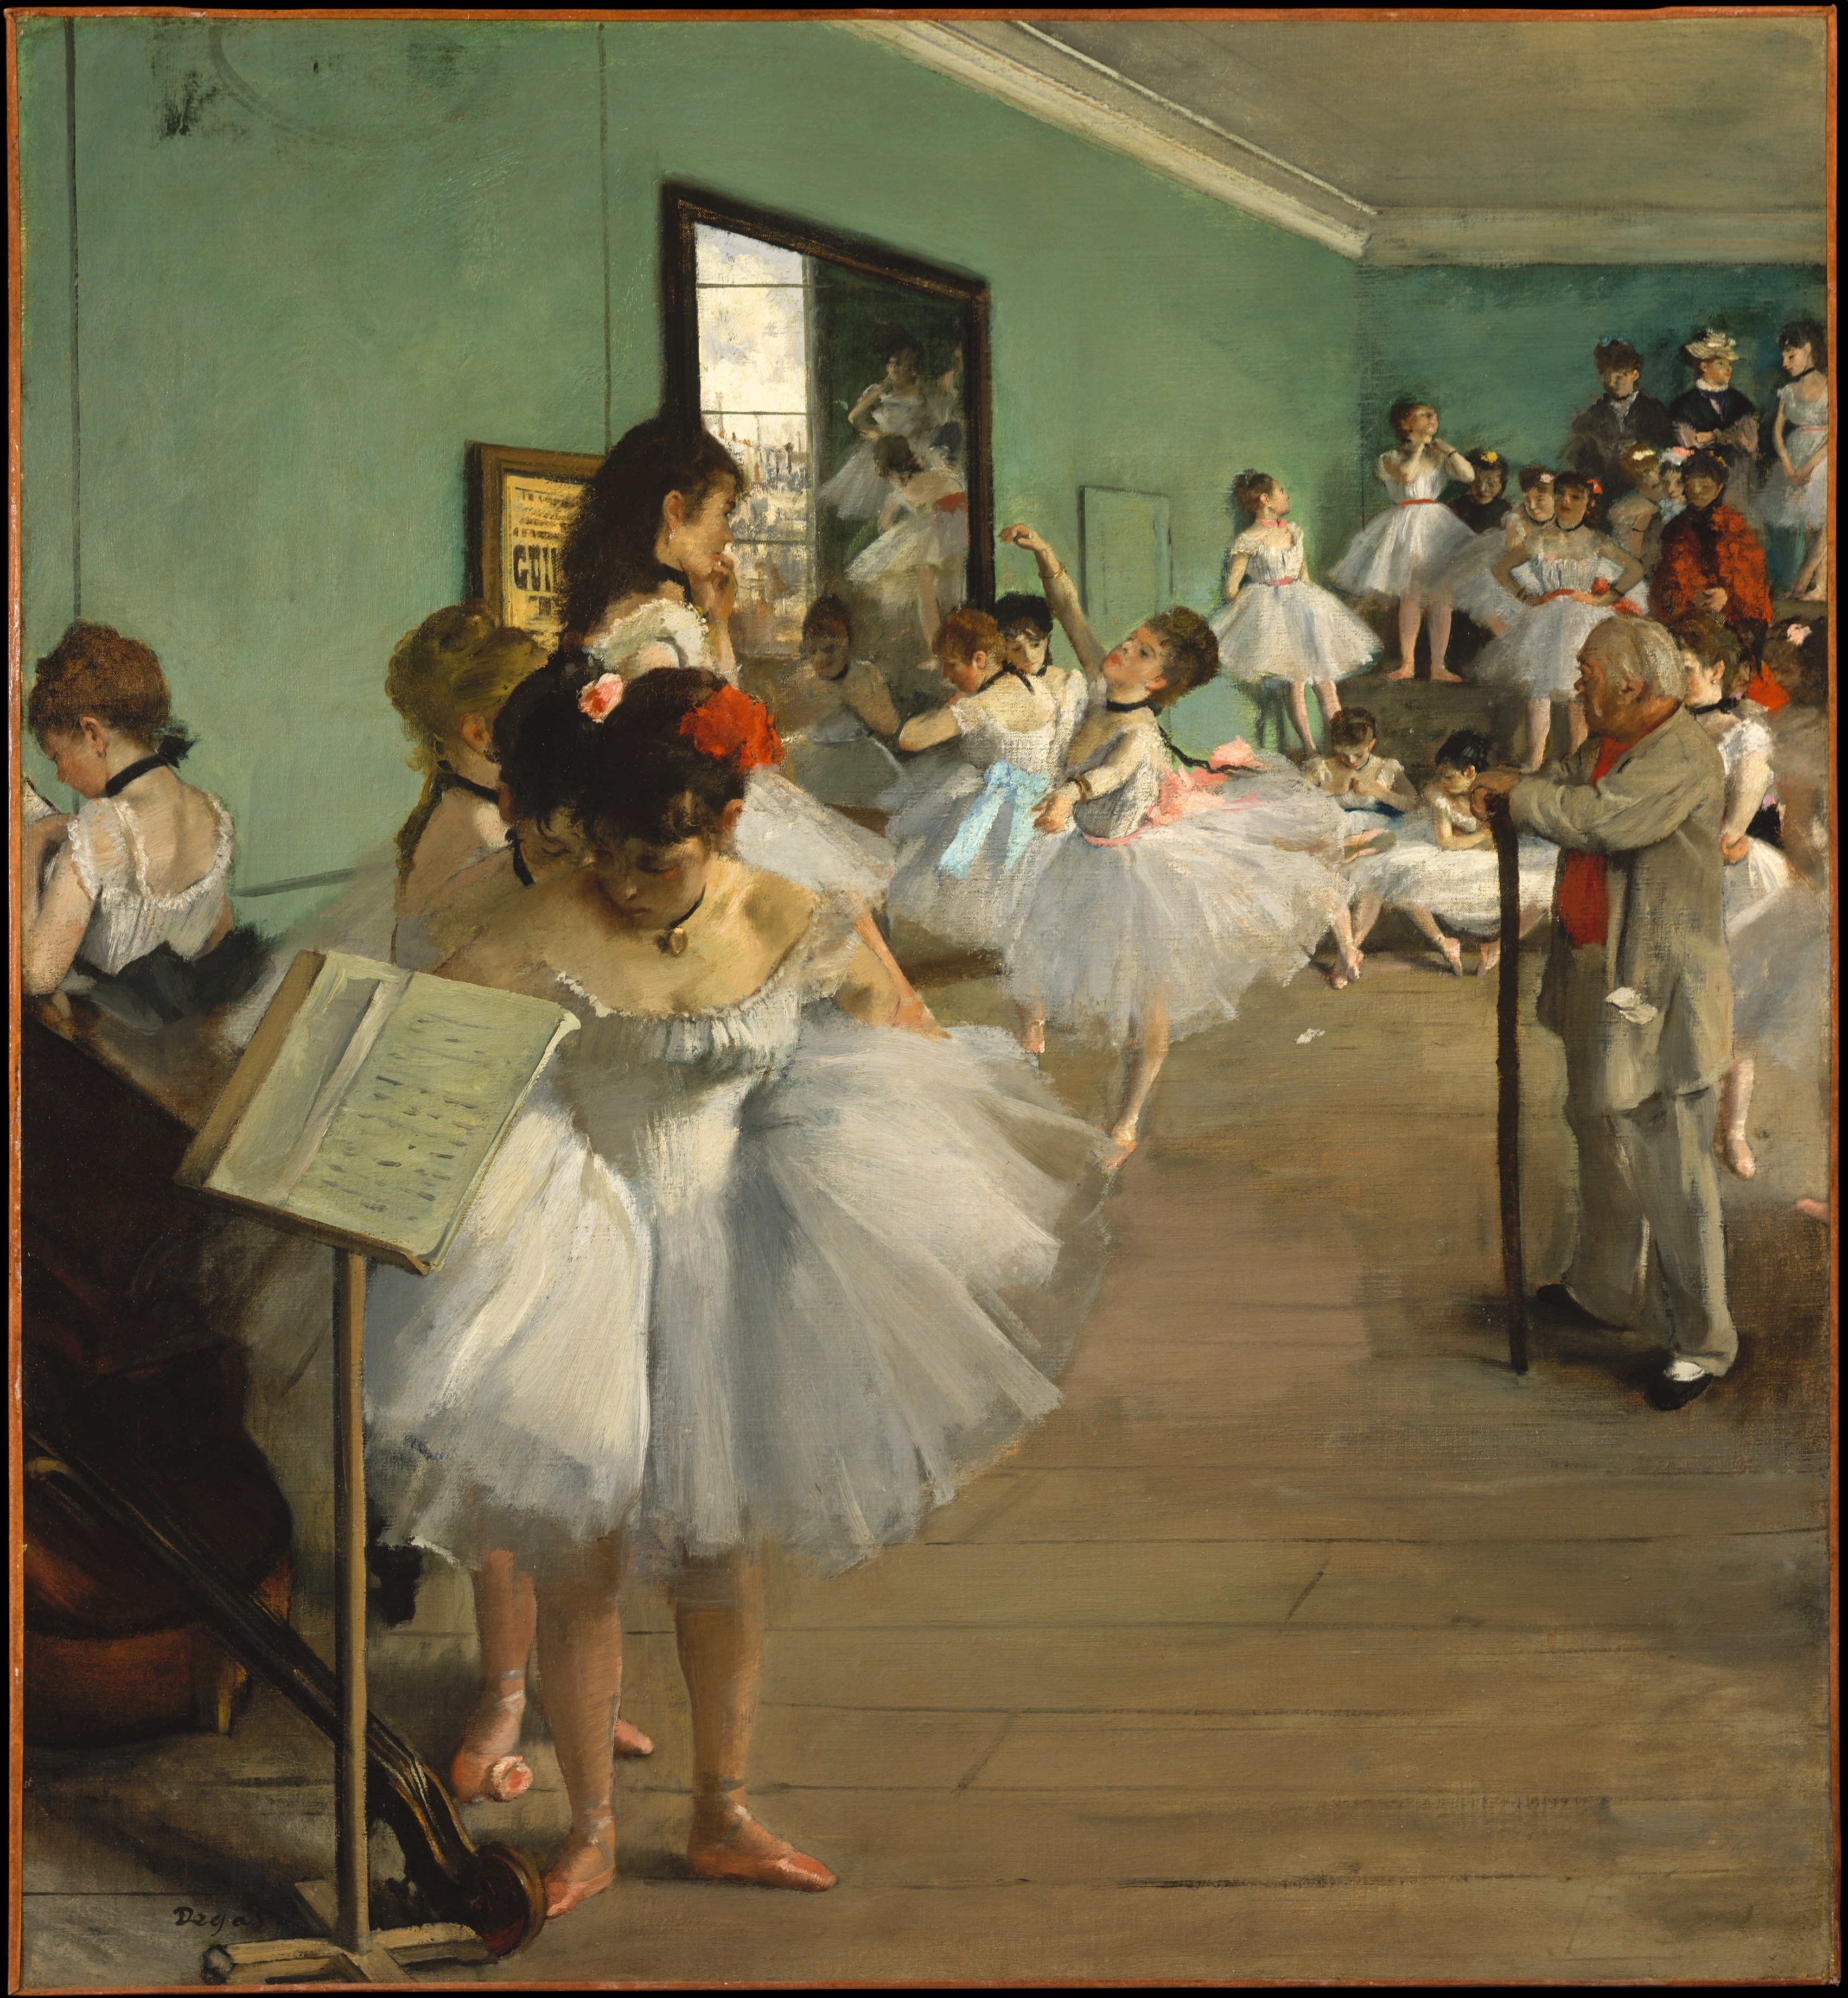 La lezione di danza by Edgar Degas - 1874 - 83.5 x 77.2 cm 